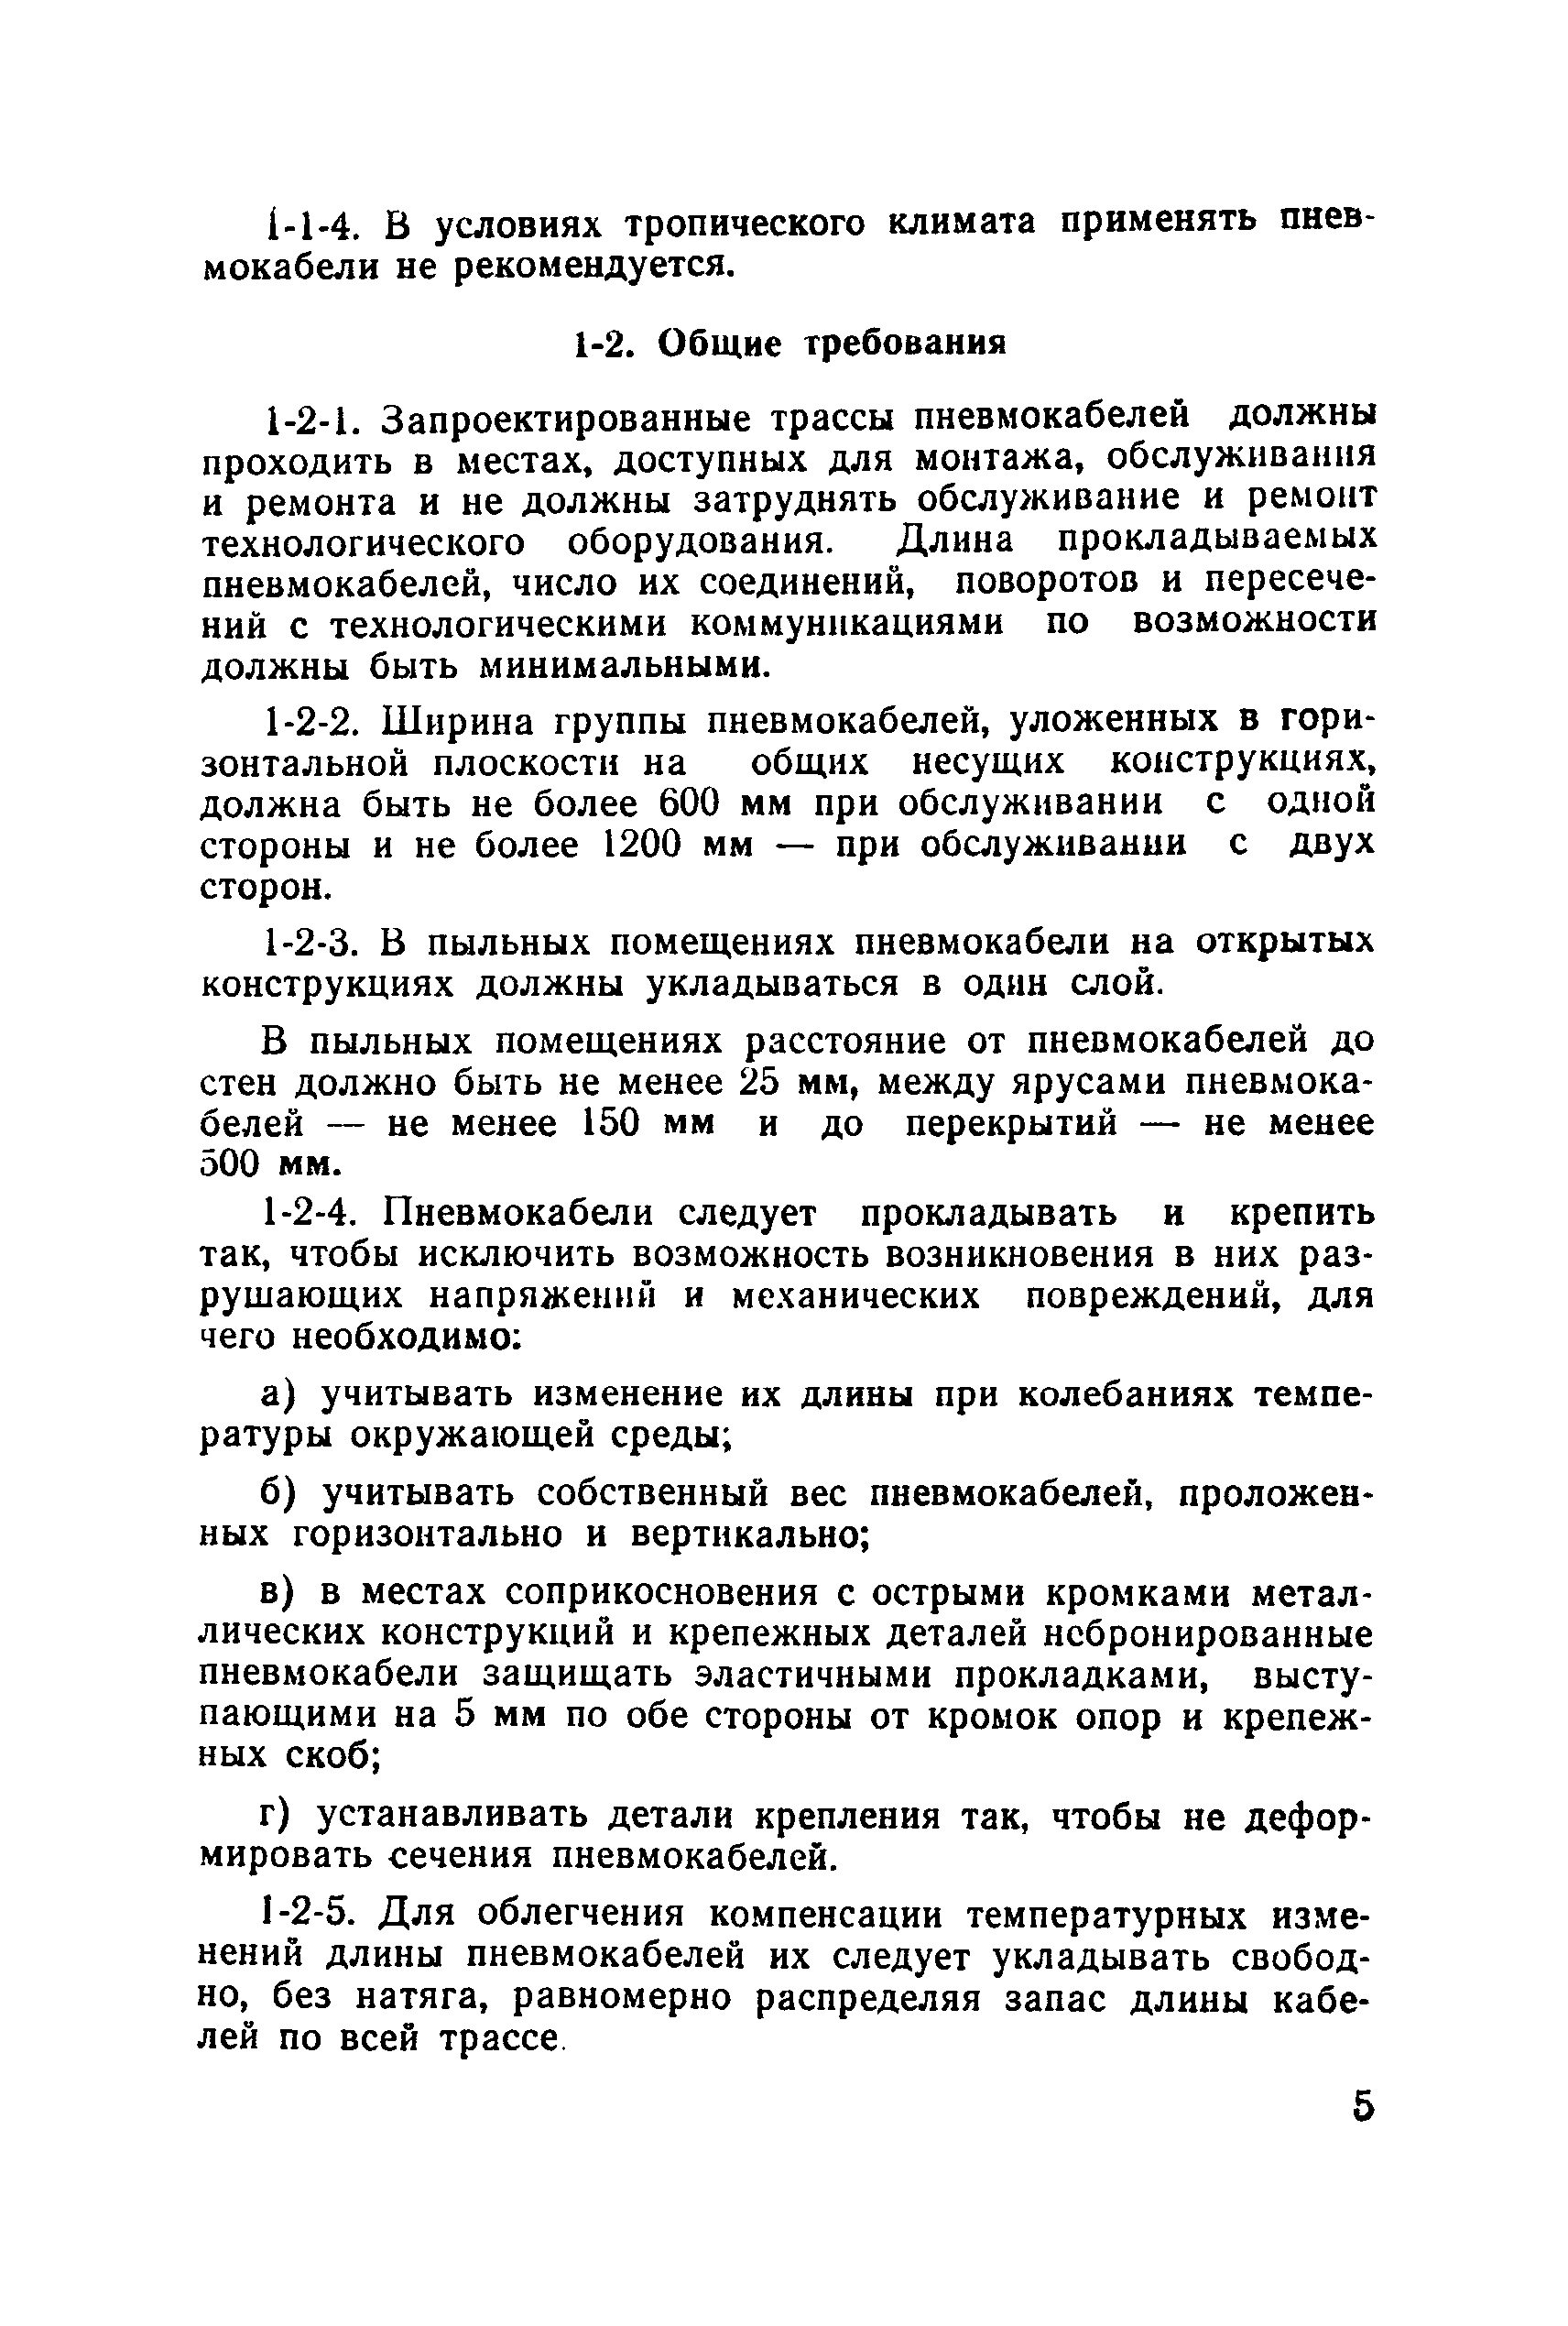 МСН 96-69/ММСС СССР